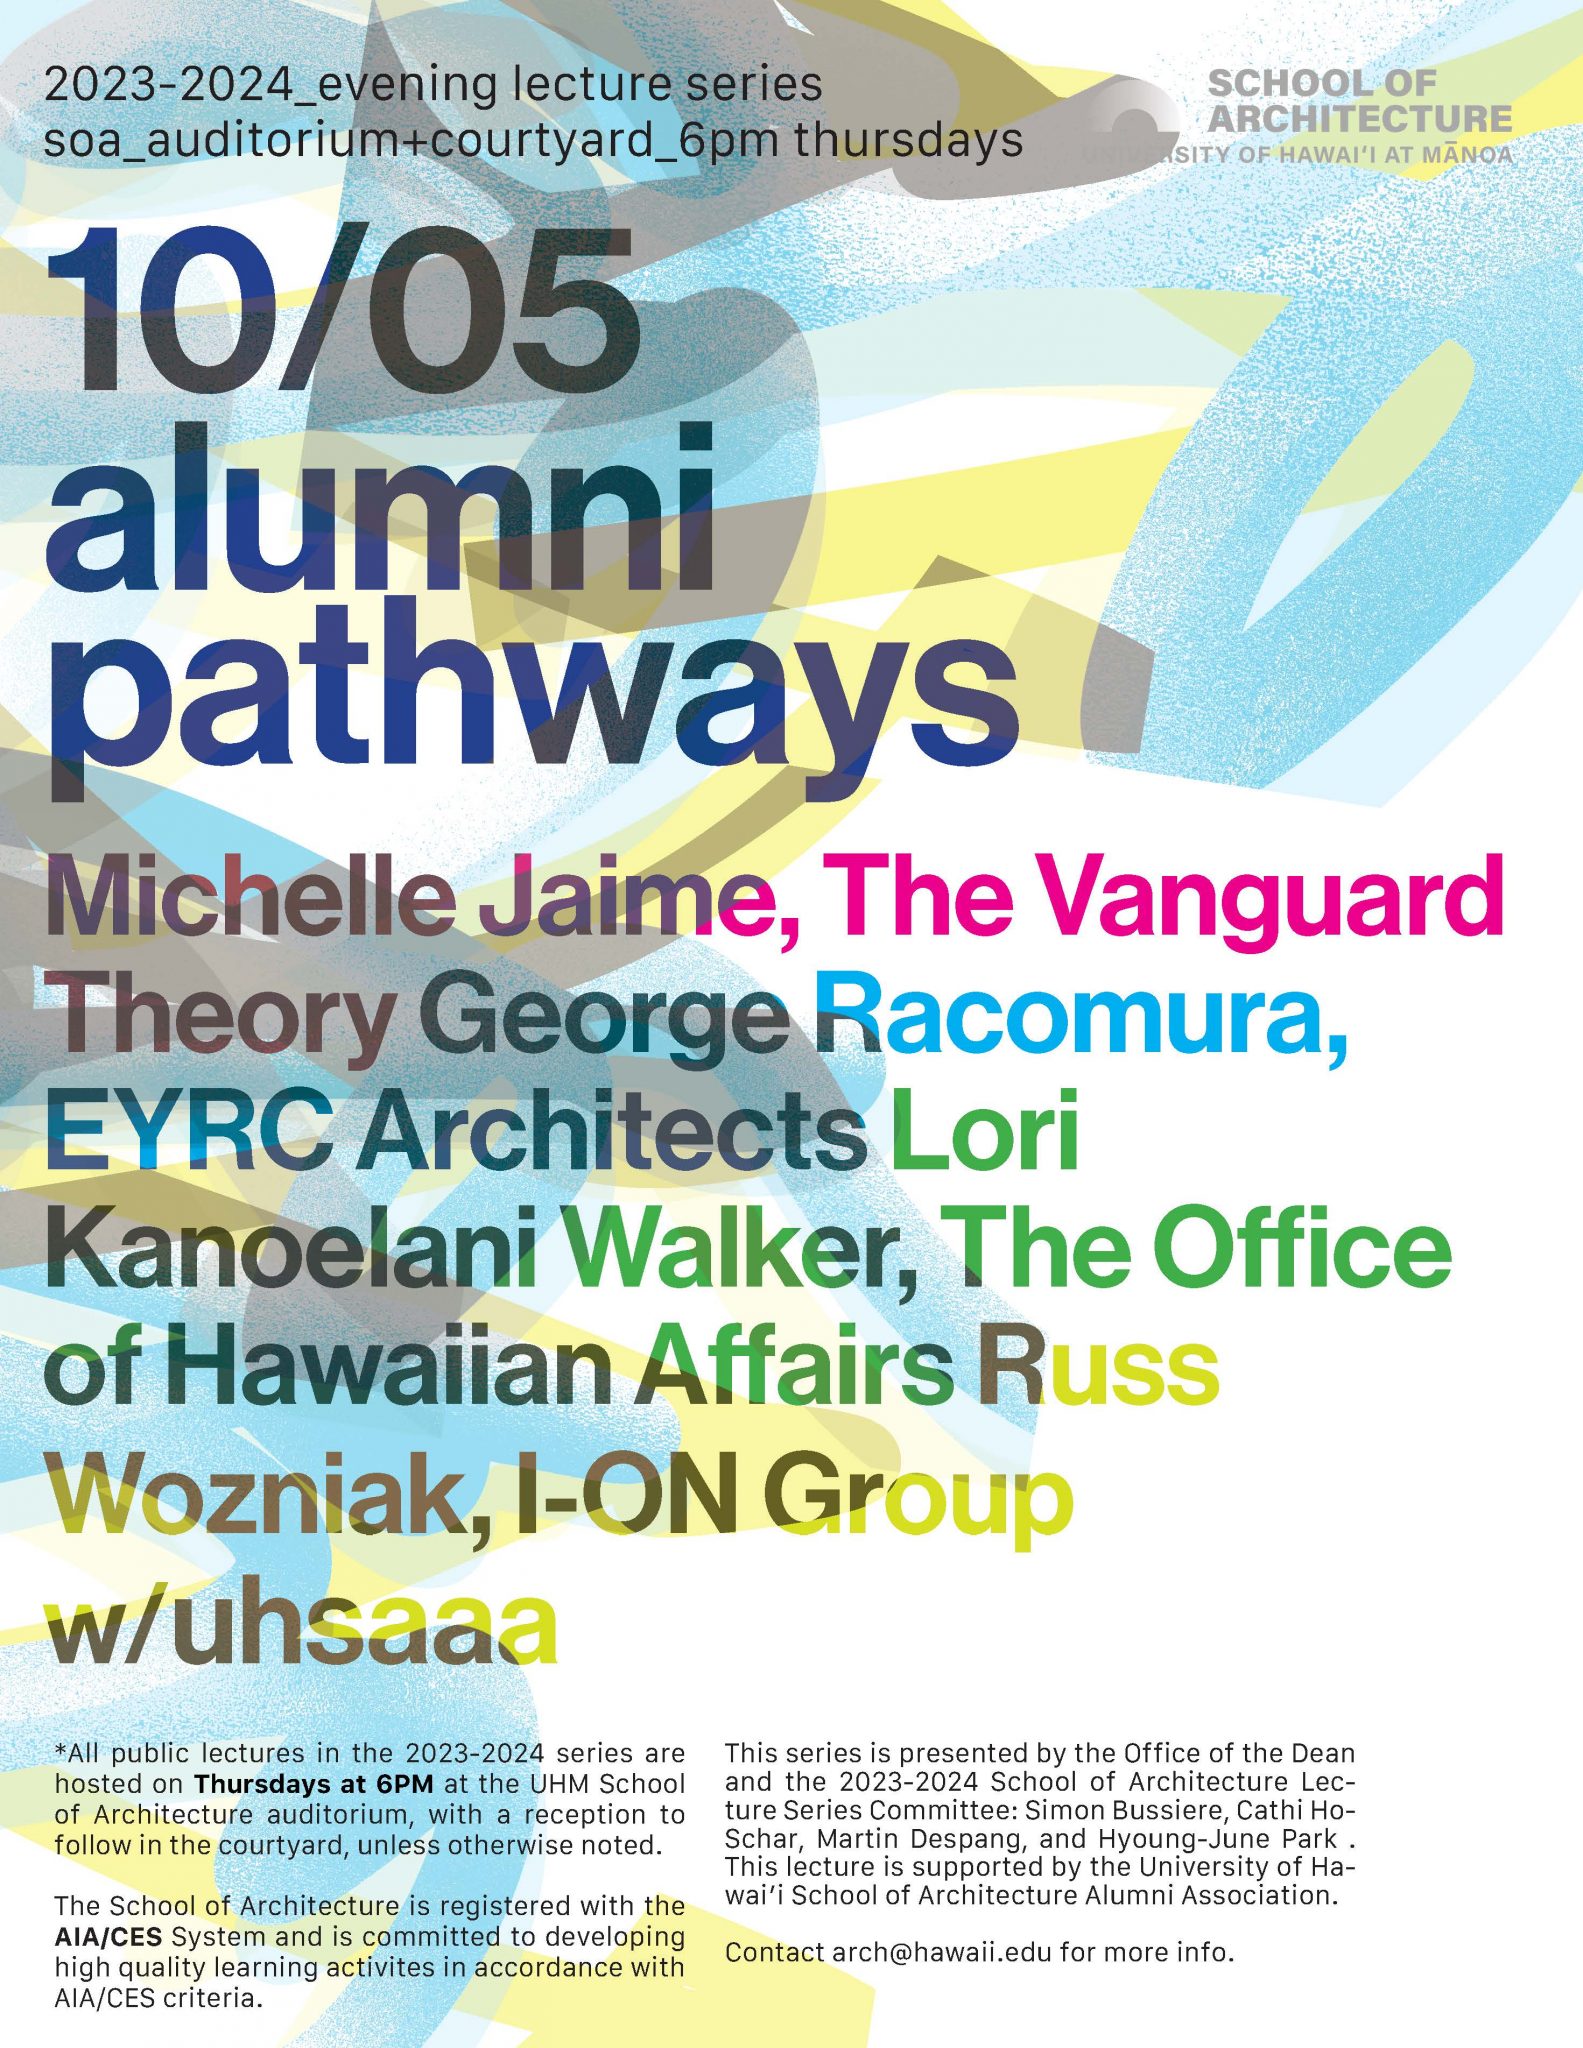 Alumni Pathways<br> <br>At UHM School of Architecture Auditorium <br>10/05 6pm